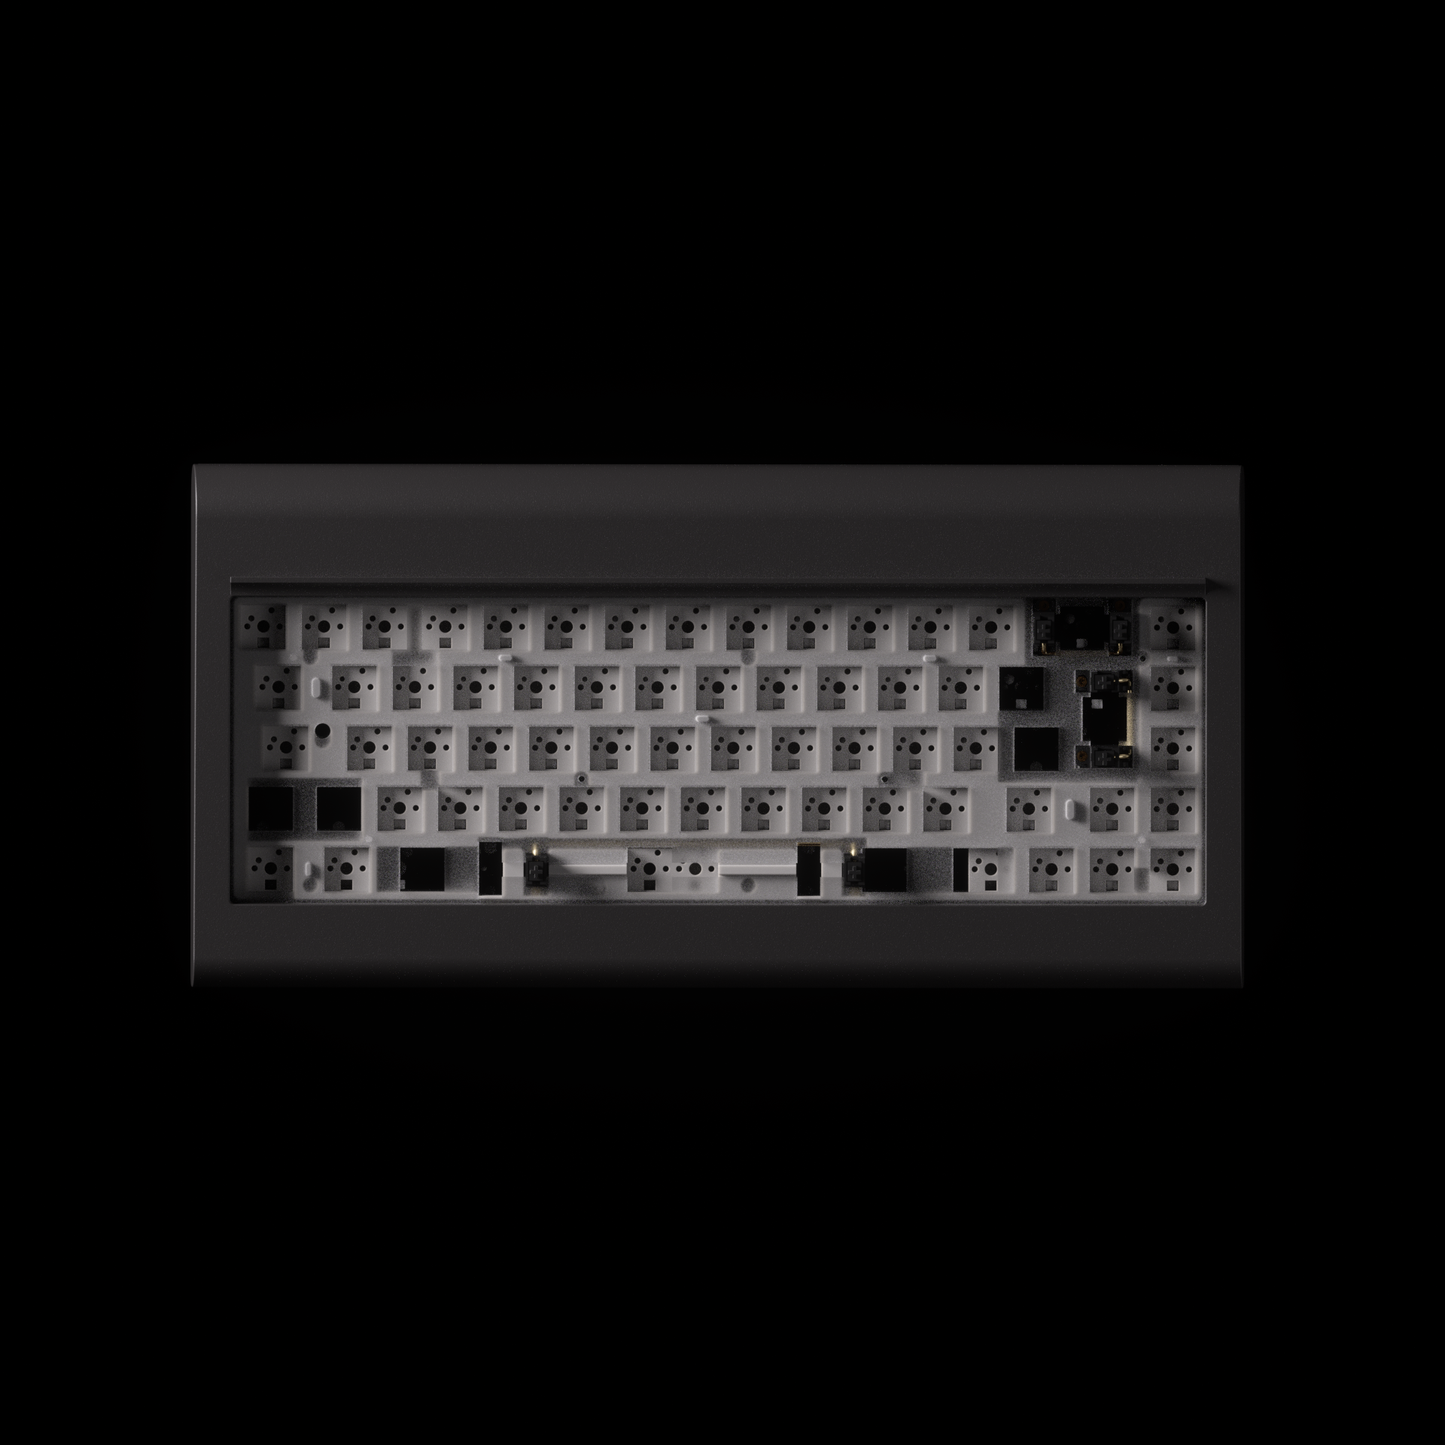 PC66 Barebone (68 Key)